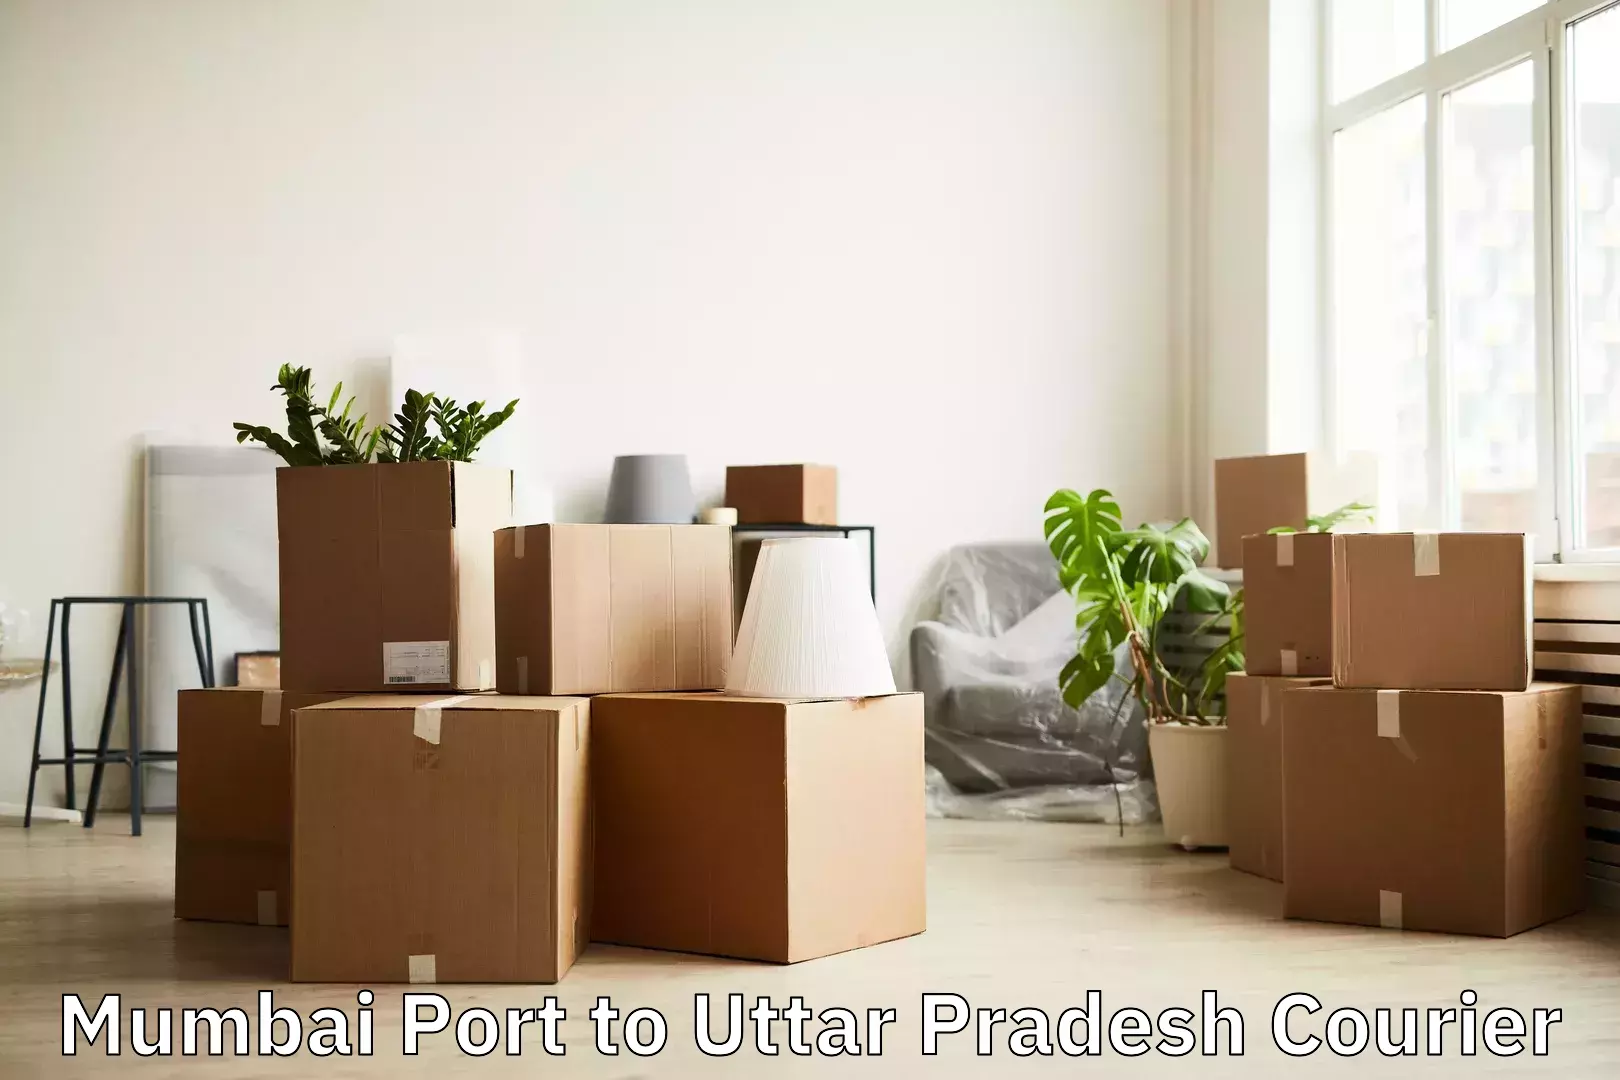 Reliable luggage courier Mumbai Port to Uttar Pradesh